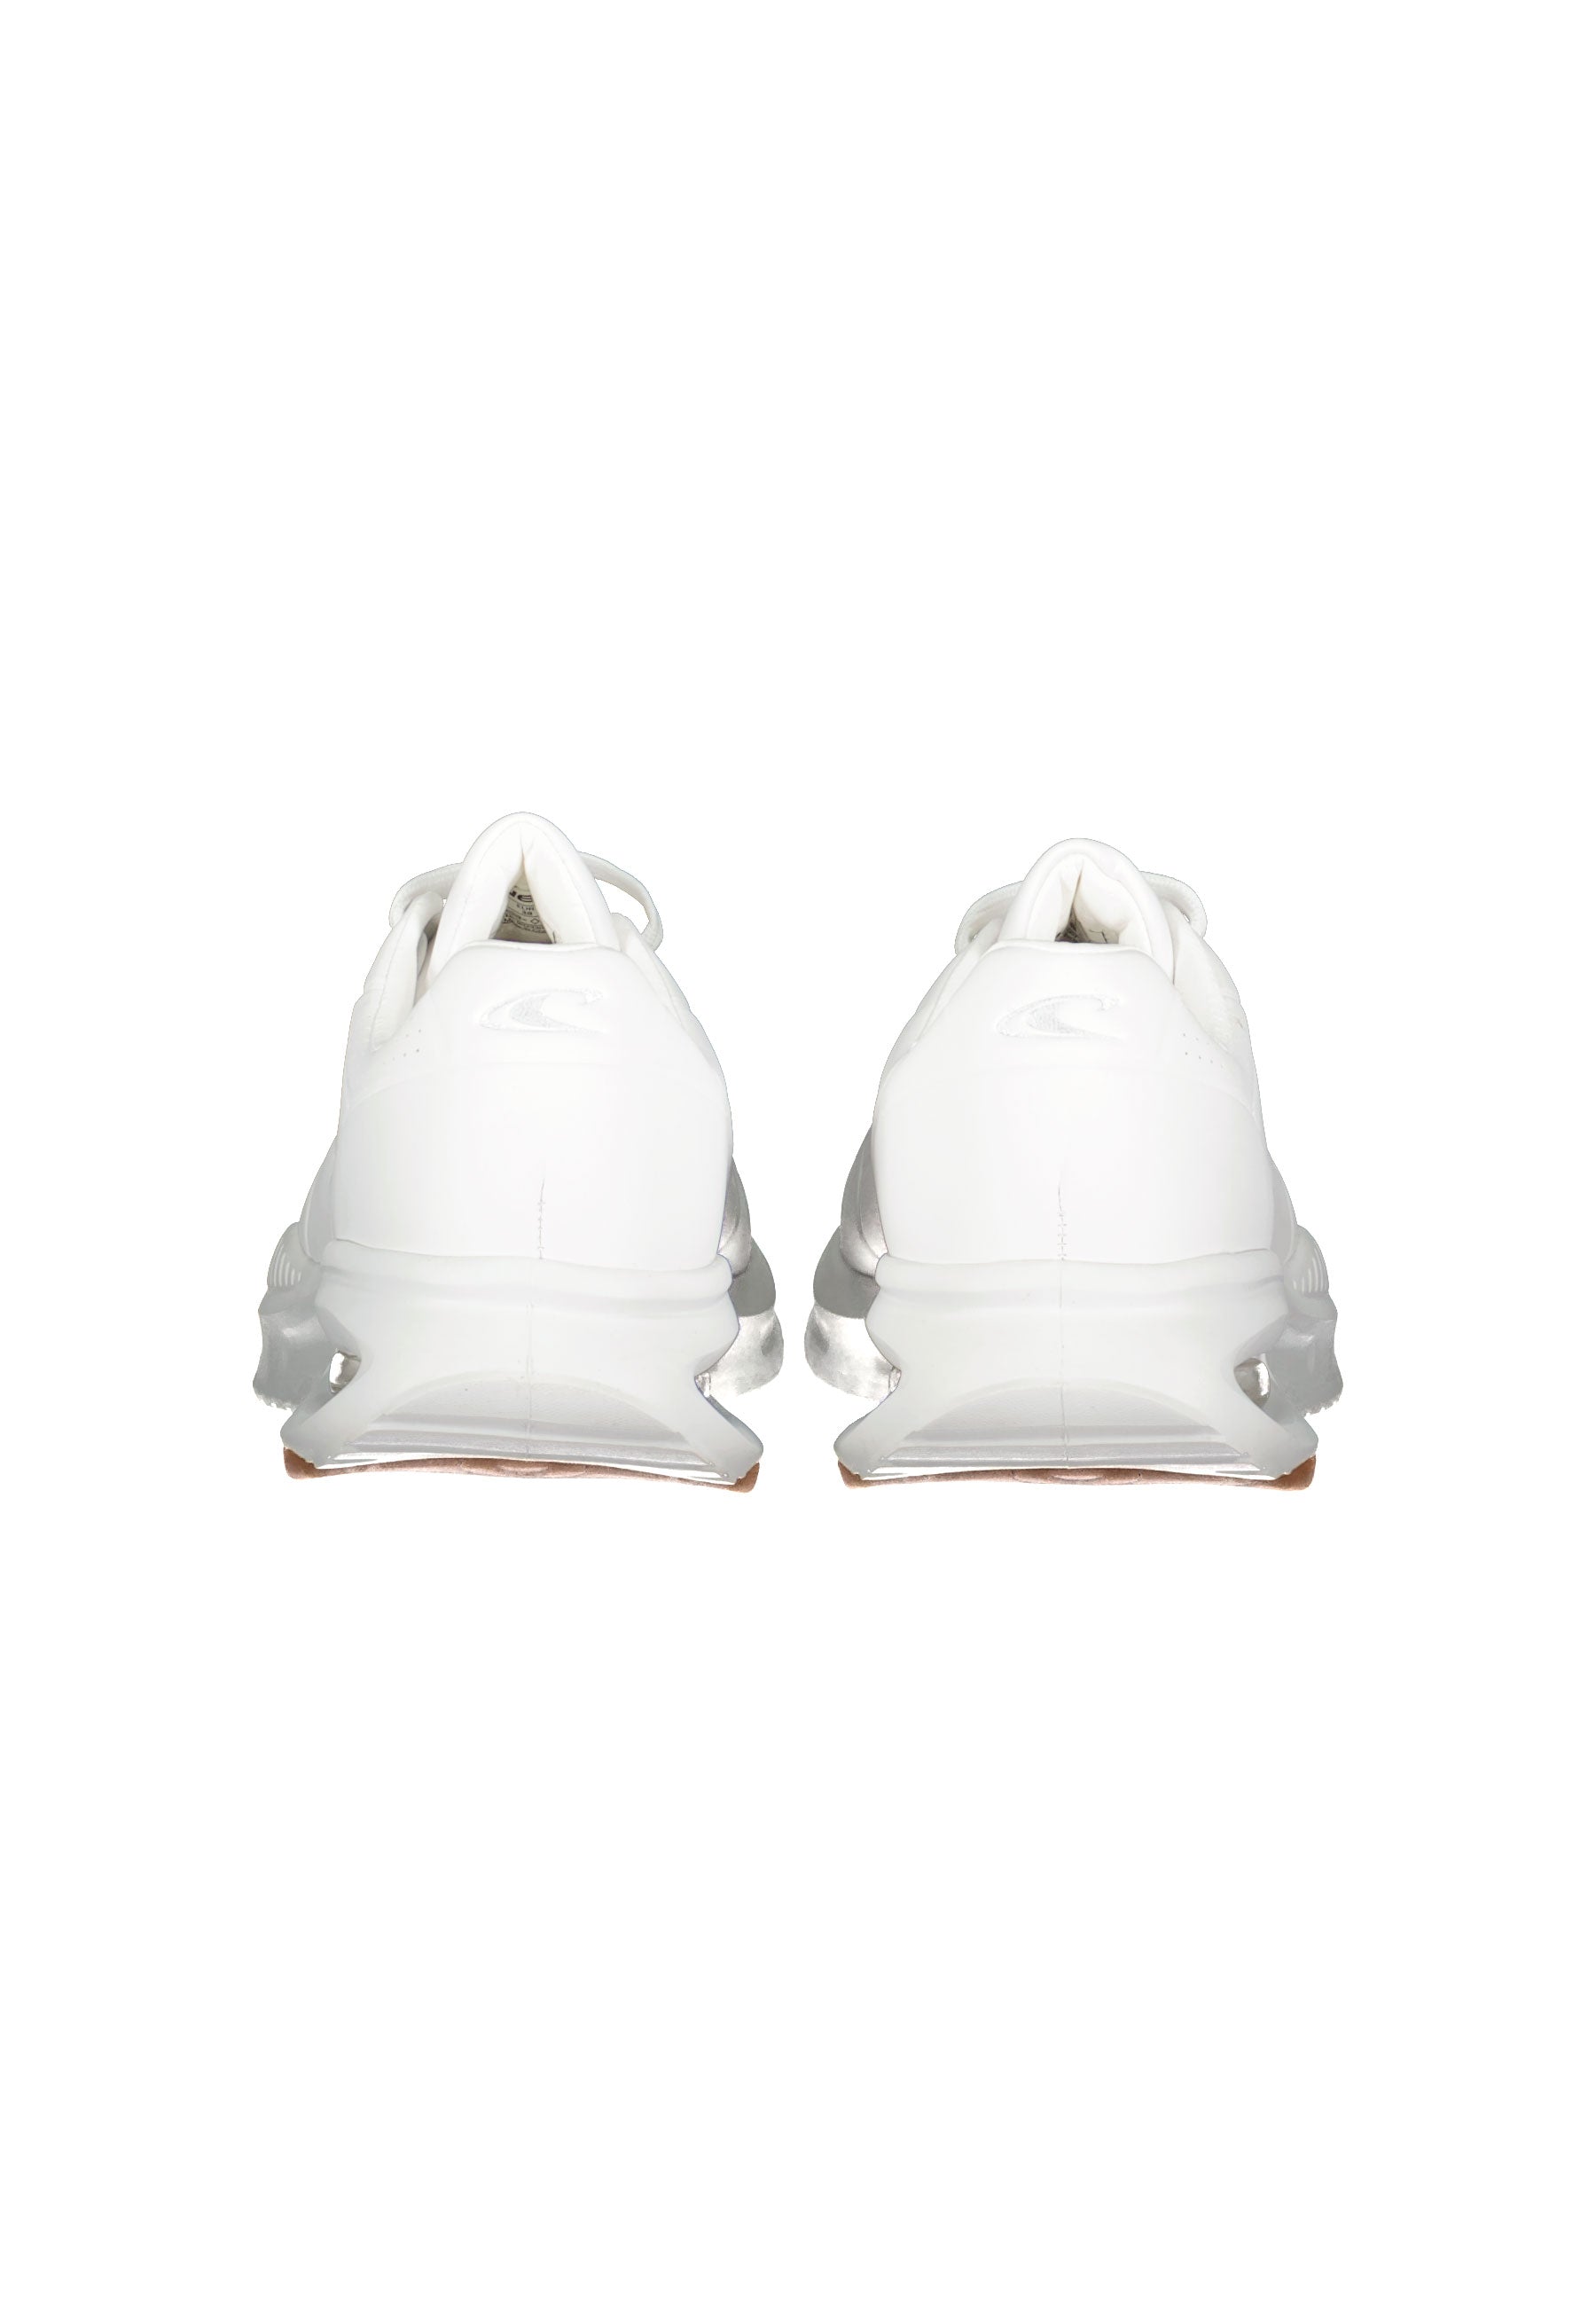 Perdido Low in Bright White Sneakers O'Neill   